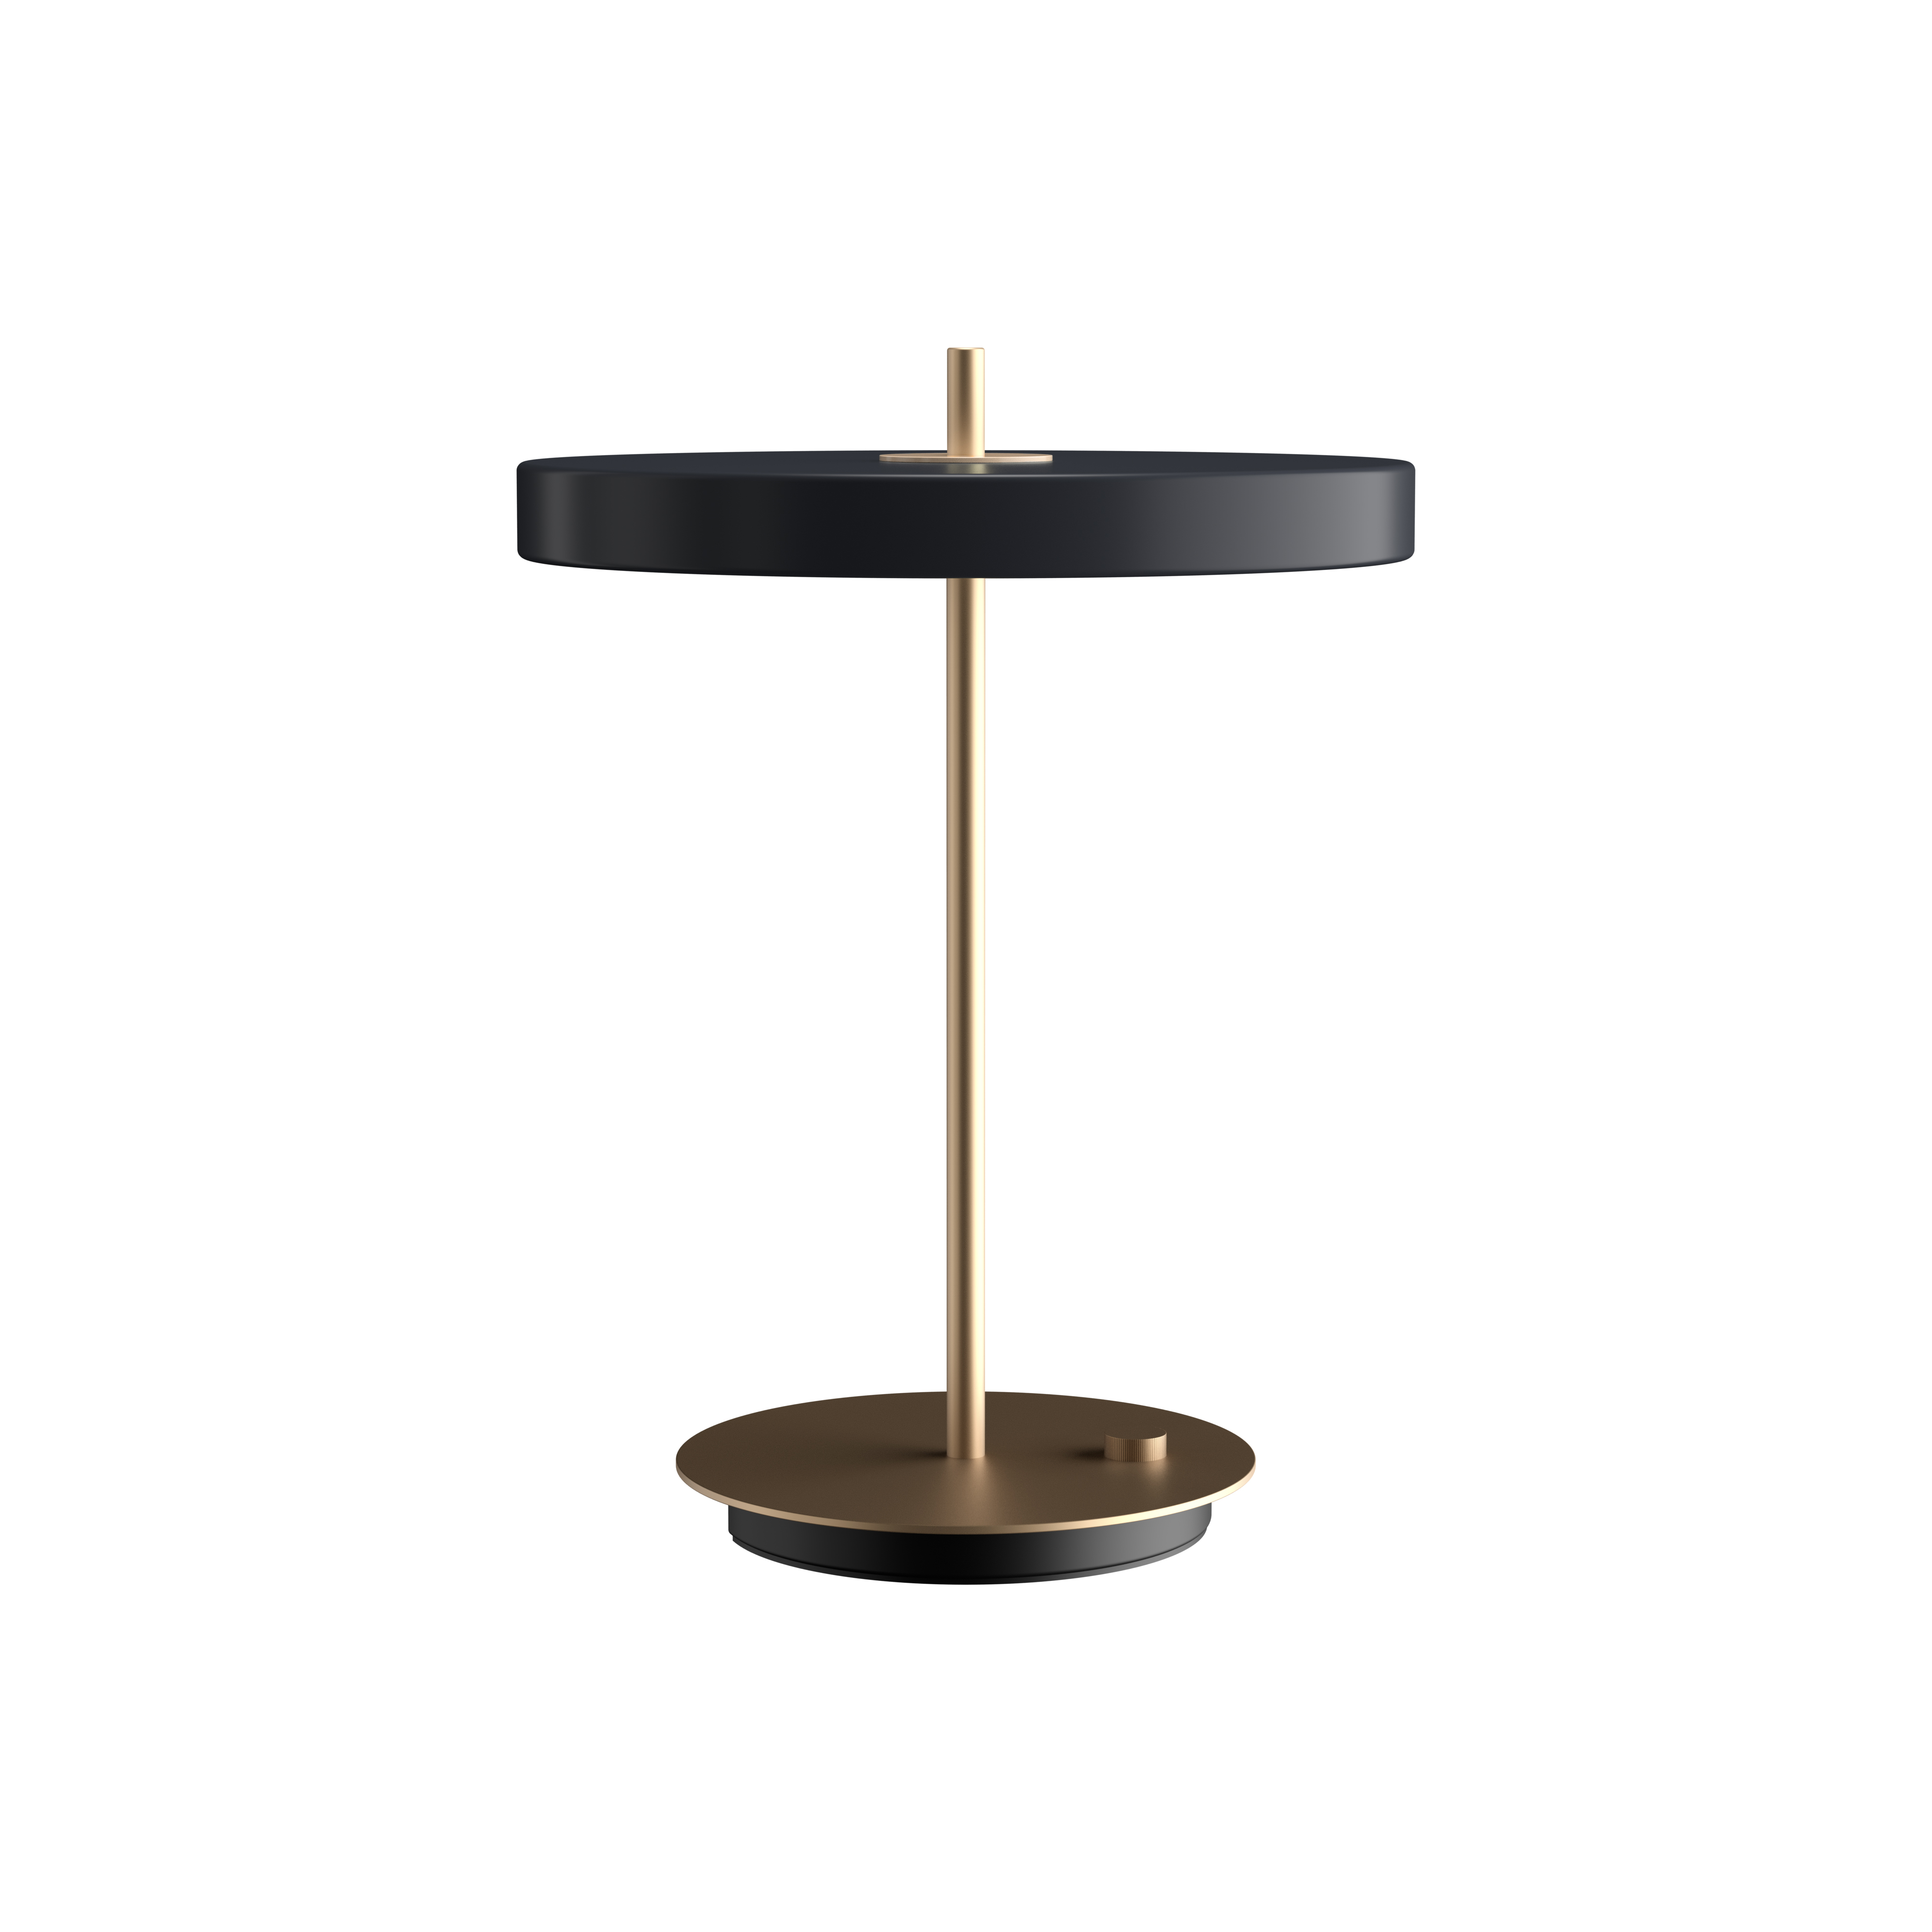 ASTERIA TABLE| dizajnové stolové svietidlo Farba: Šedý antracit